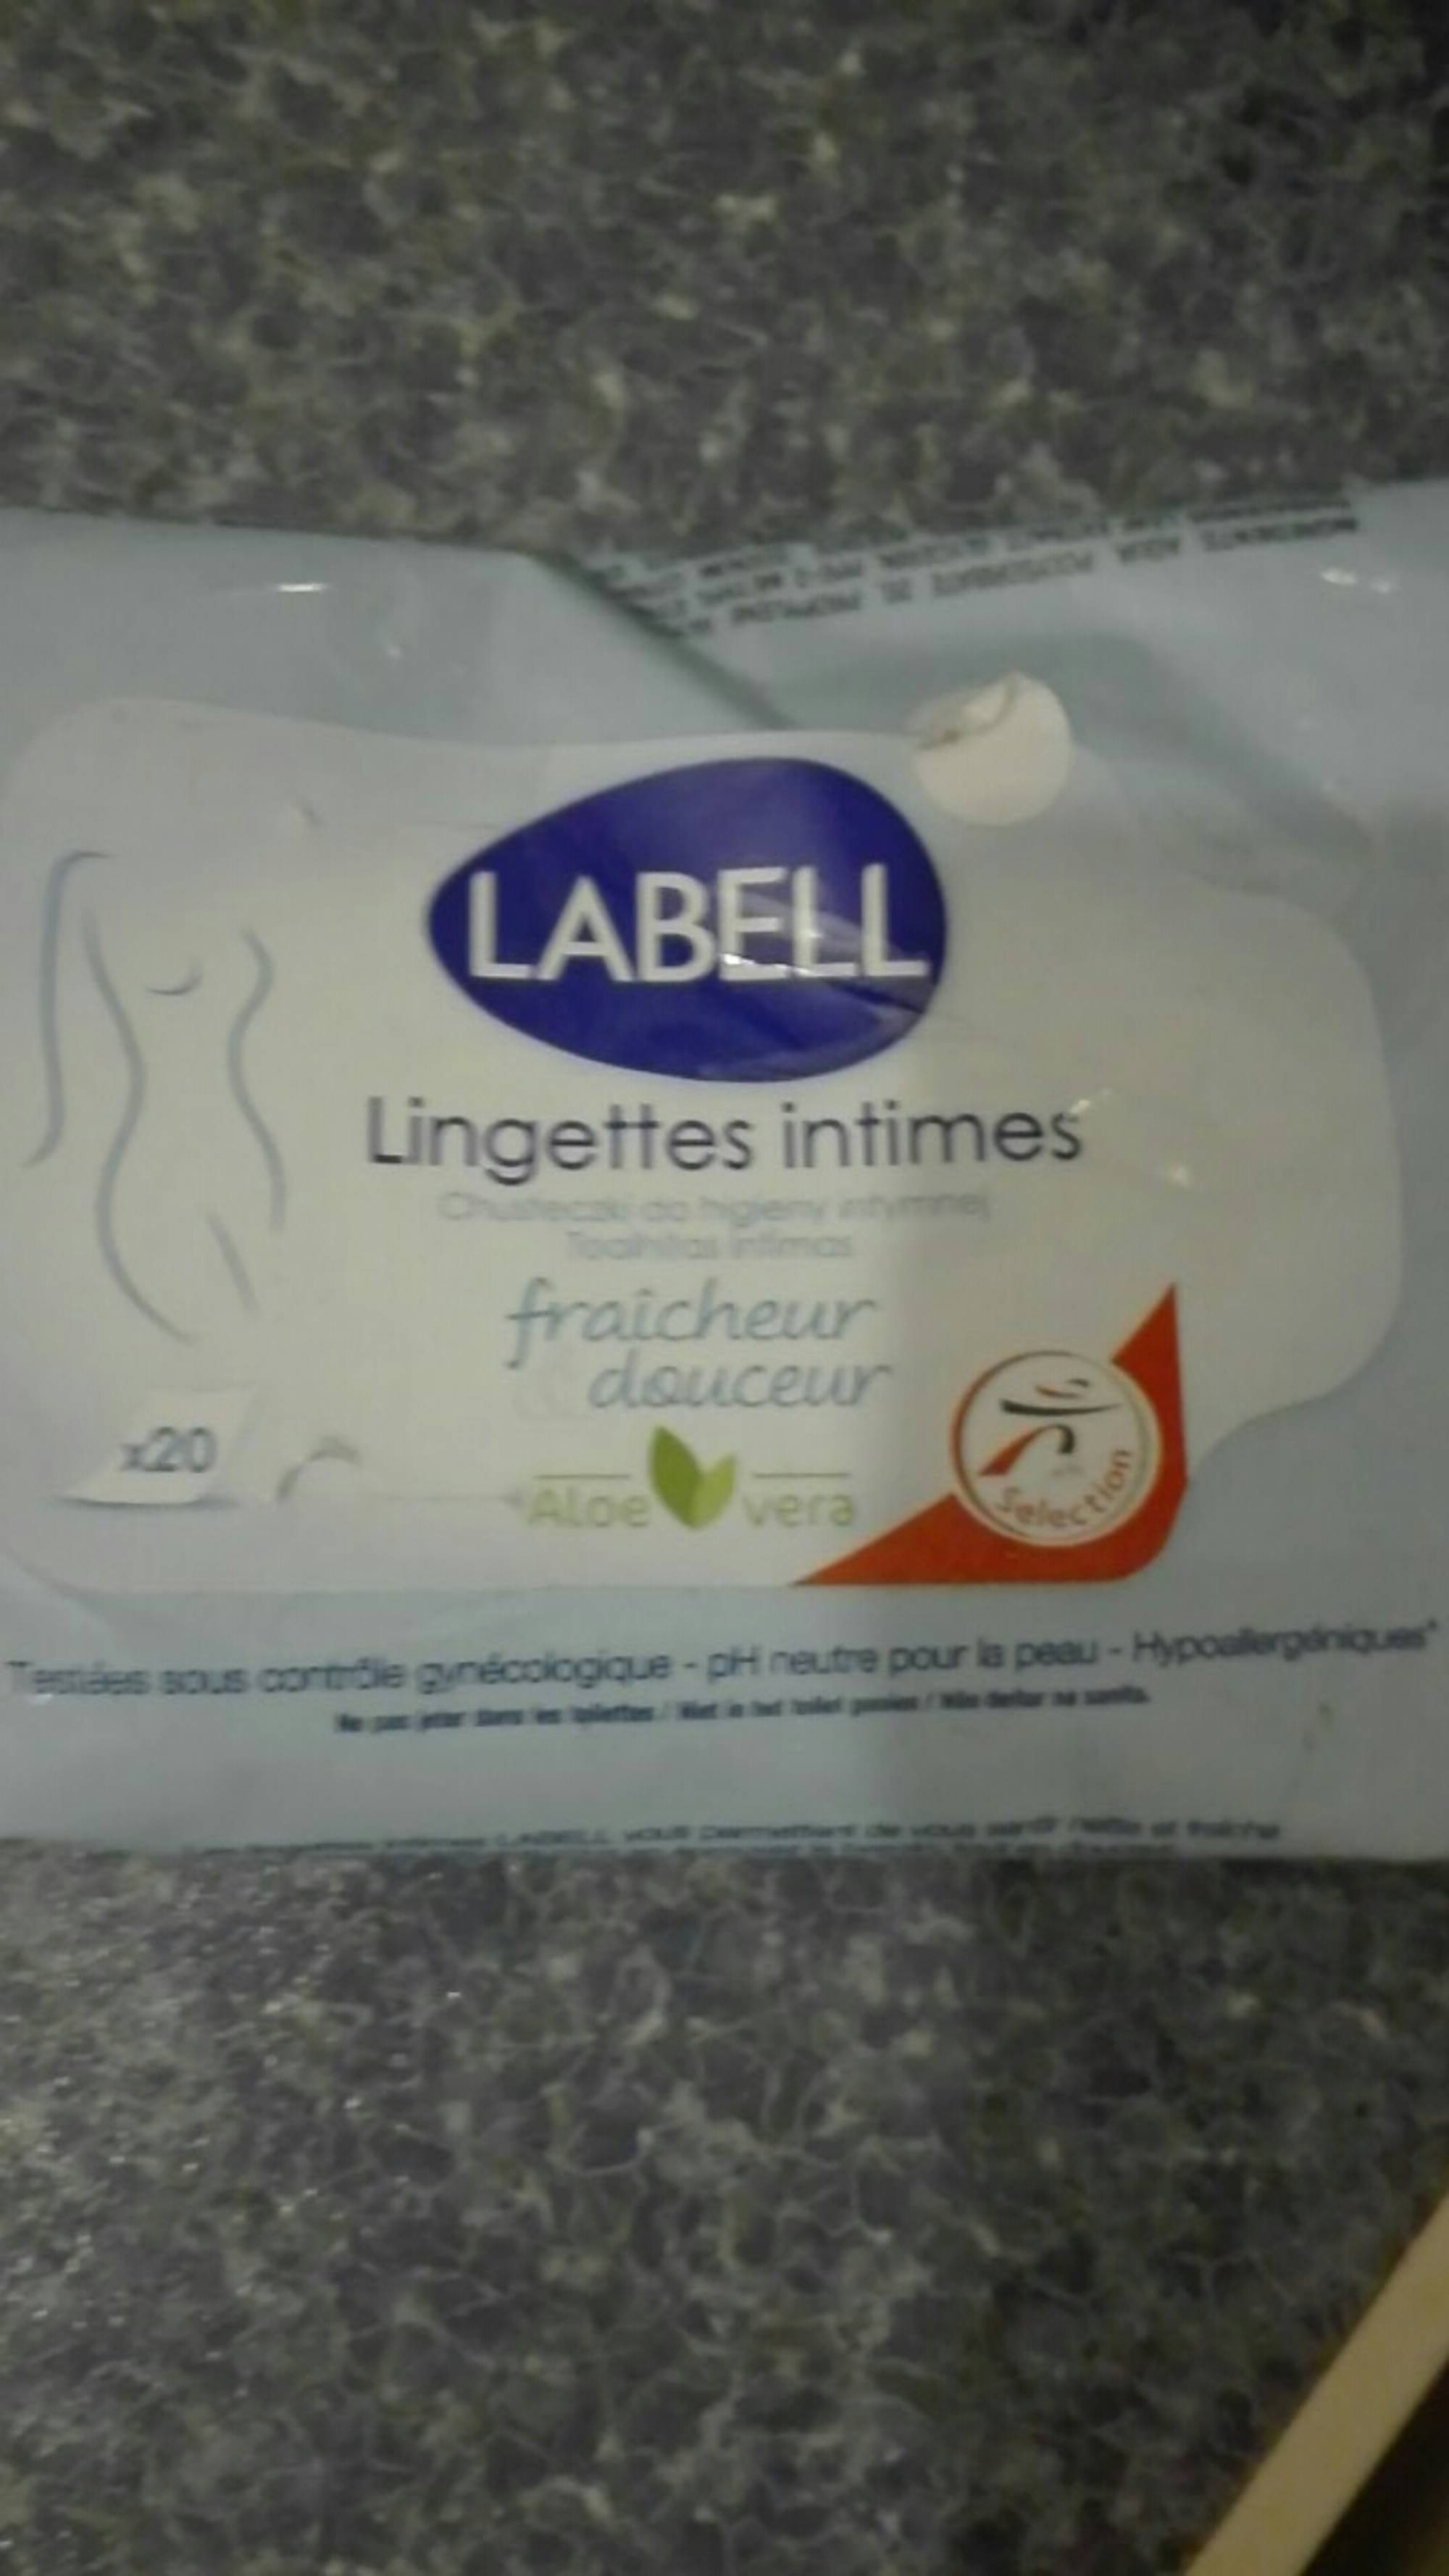 Lingettes intimes fraicheur&douceur aleo vera x20 pièces LABELL - KIBO